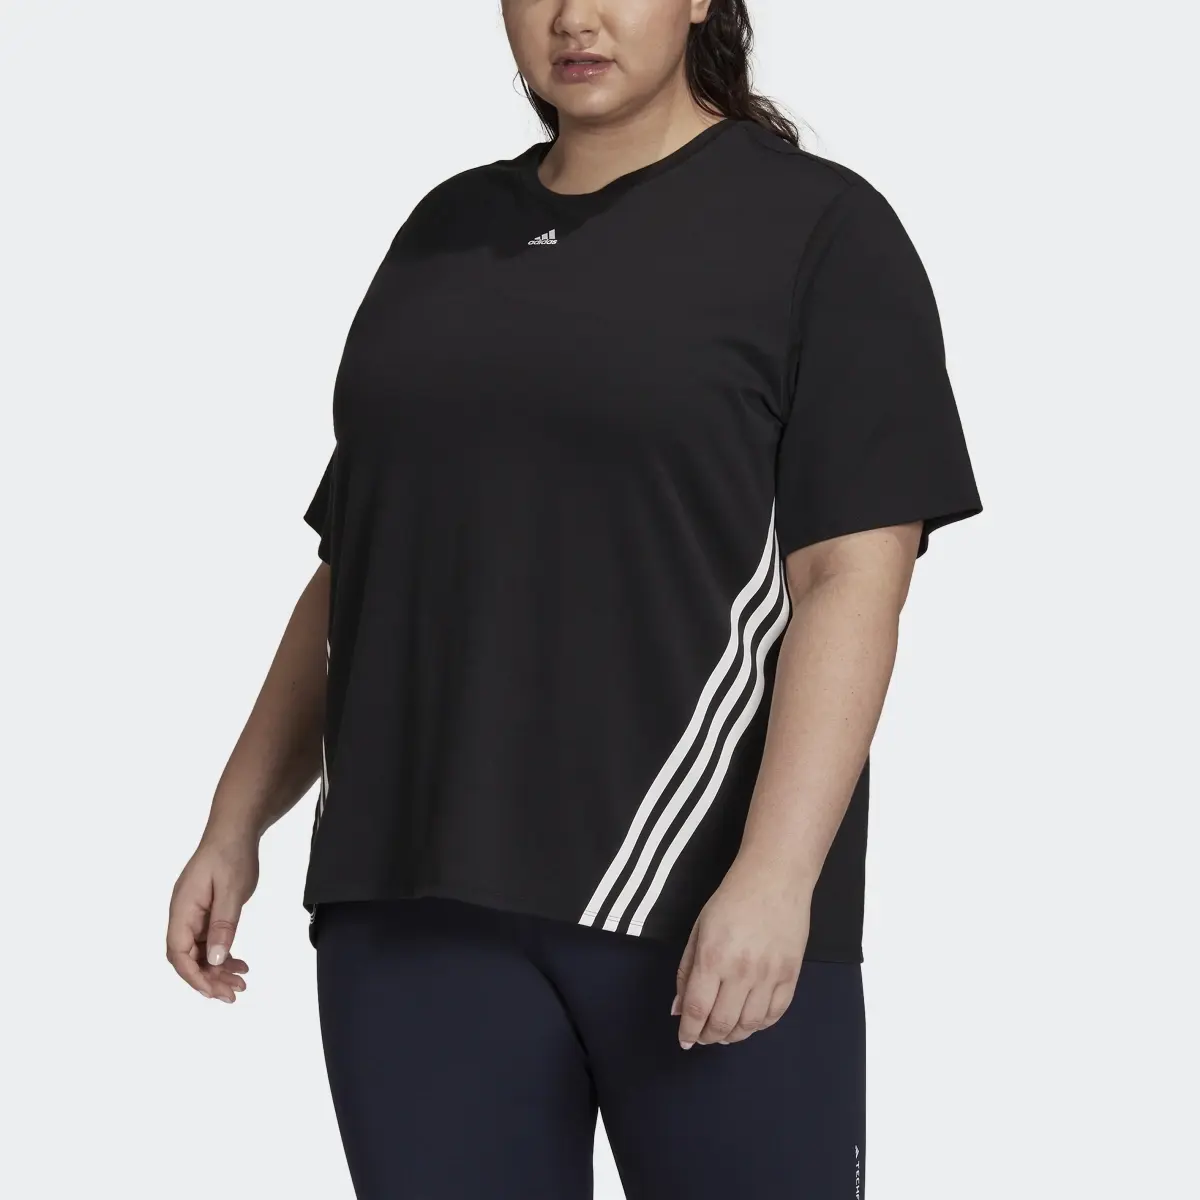 Adidas Train Icons 3-Streifen T-Shirt – Große Größen. 1